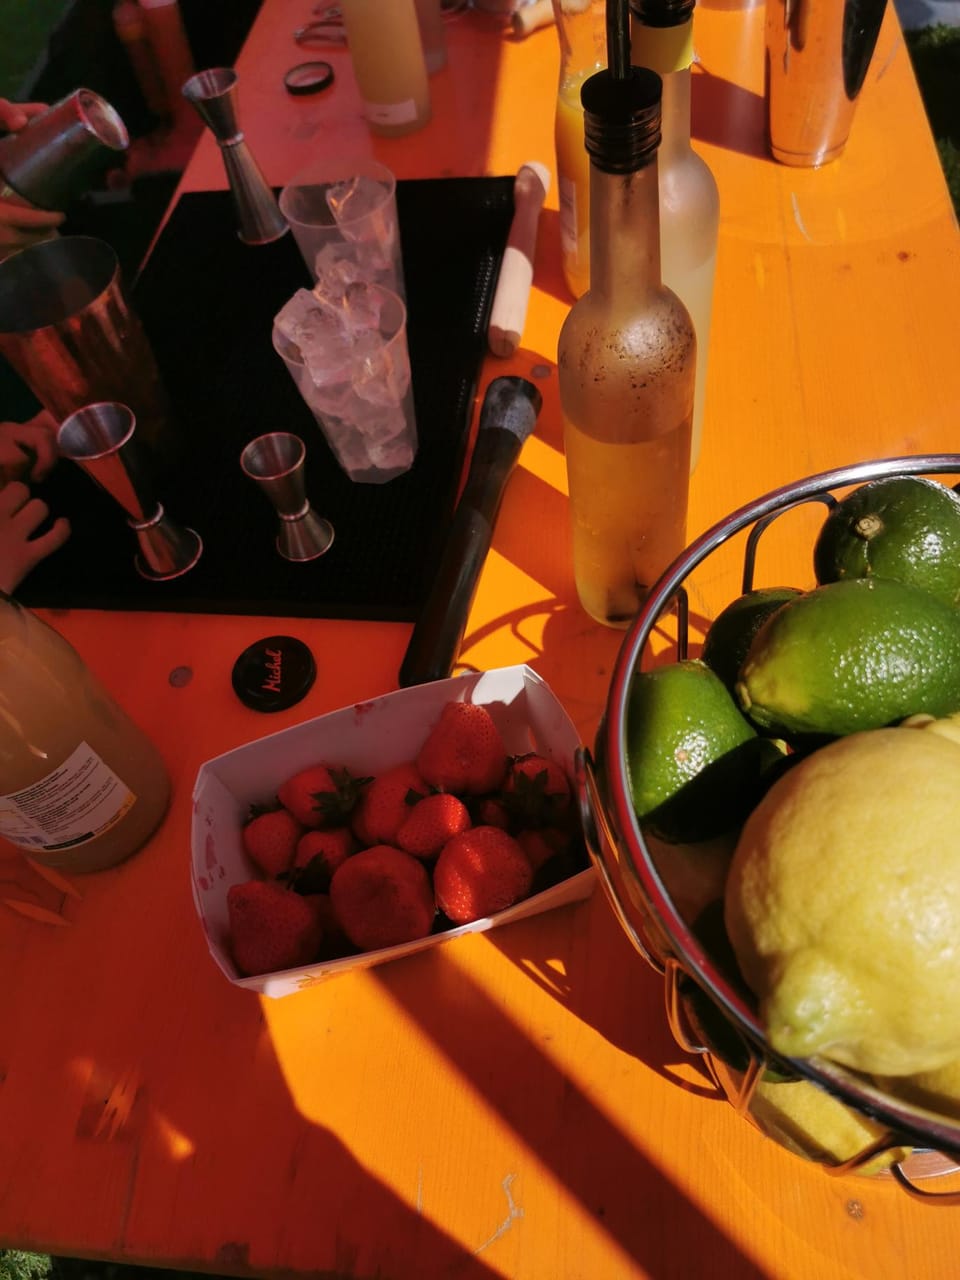 Zutaten für Cocktails wie Früchte und verschiedene Getränke.